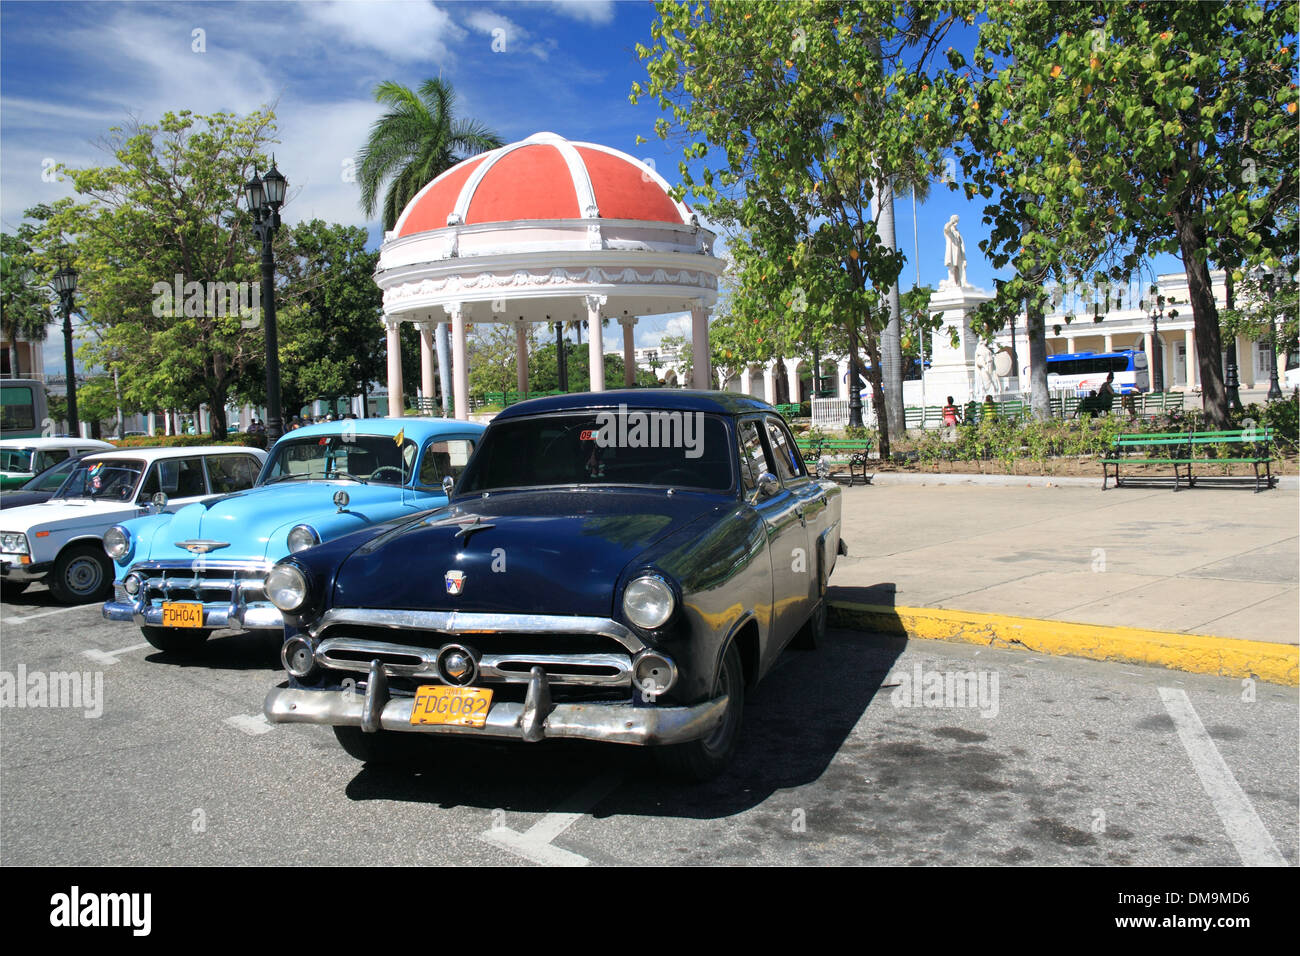 1952 Ford Mainline (1953 Chevy behind), Parque José Martí, Cienfuegos, Cienfuegos province, Cuba, Caribbean Sea, Central America Stock Photo